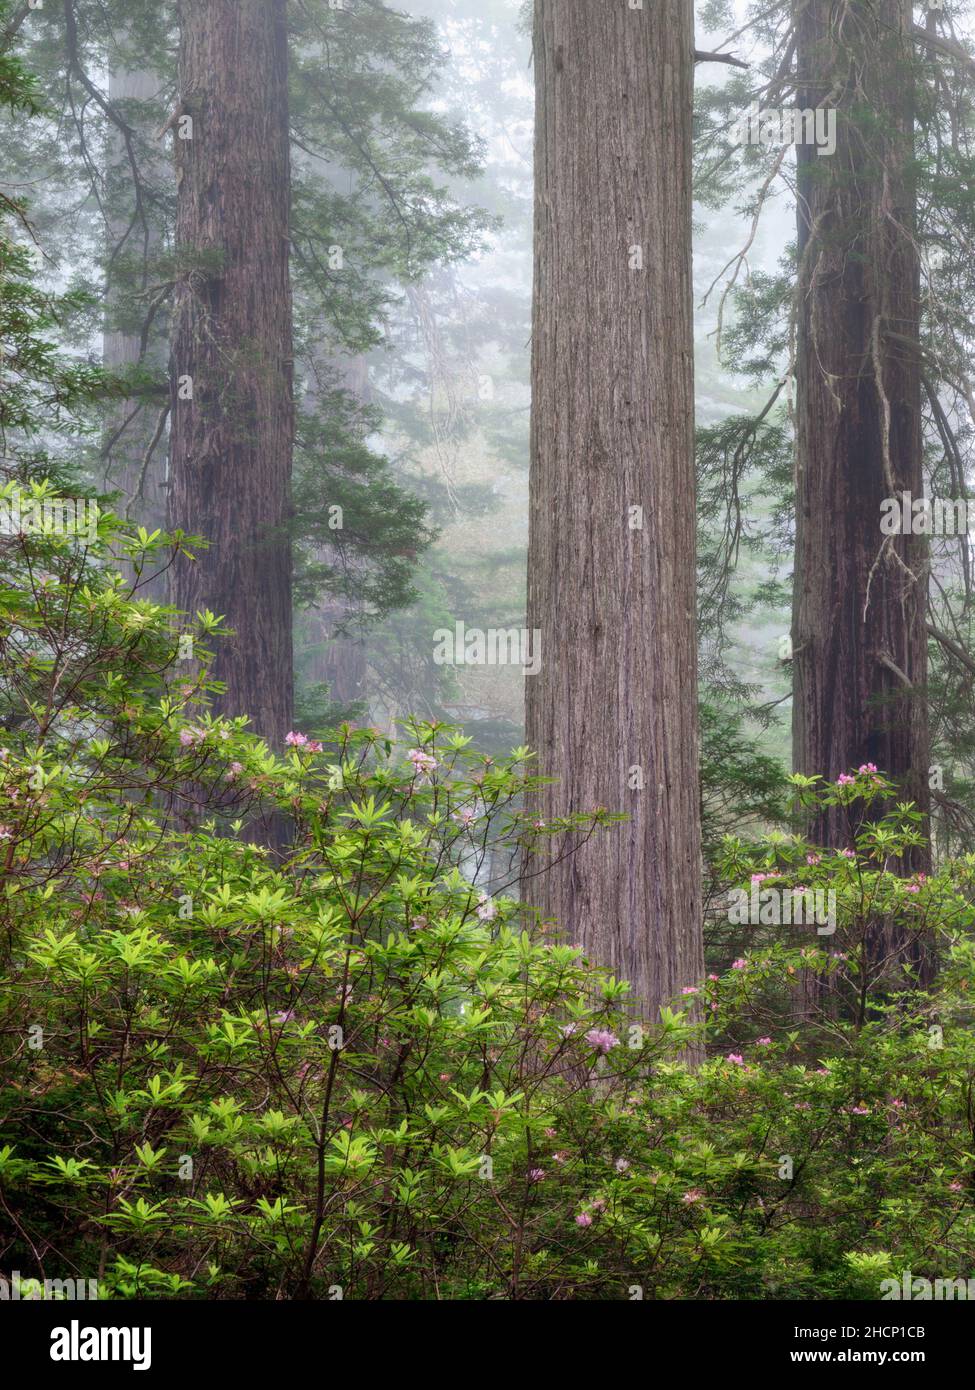 USA, California, Redwood National and state Parks, rododendri in fiore e maestose sequoie nella nebbia Foto Stock